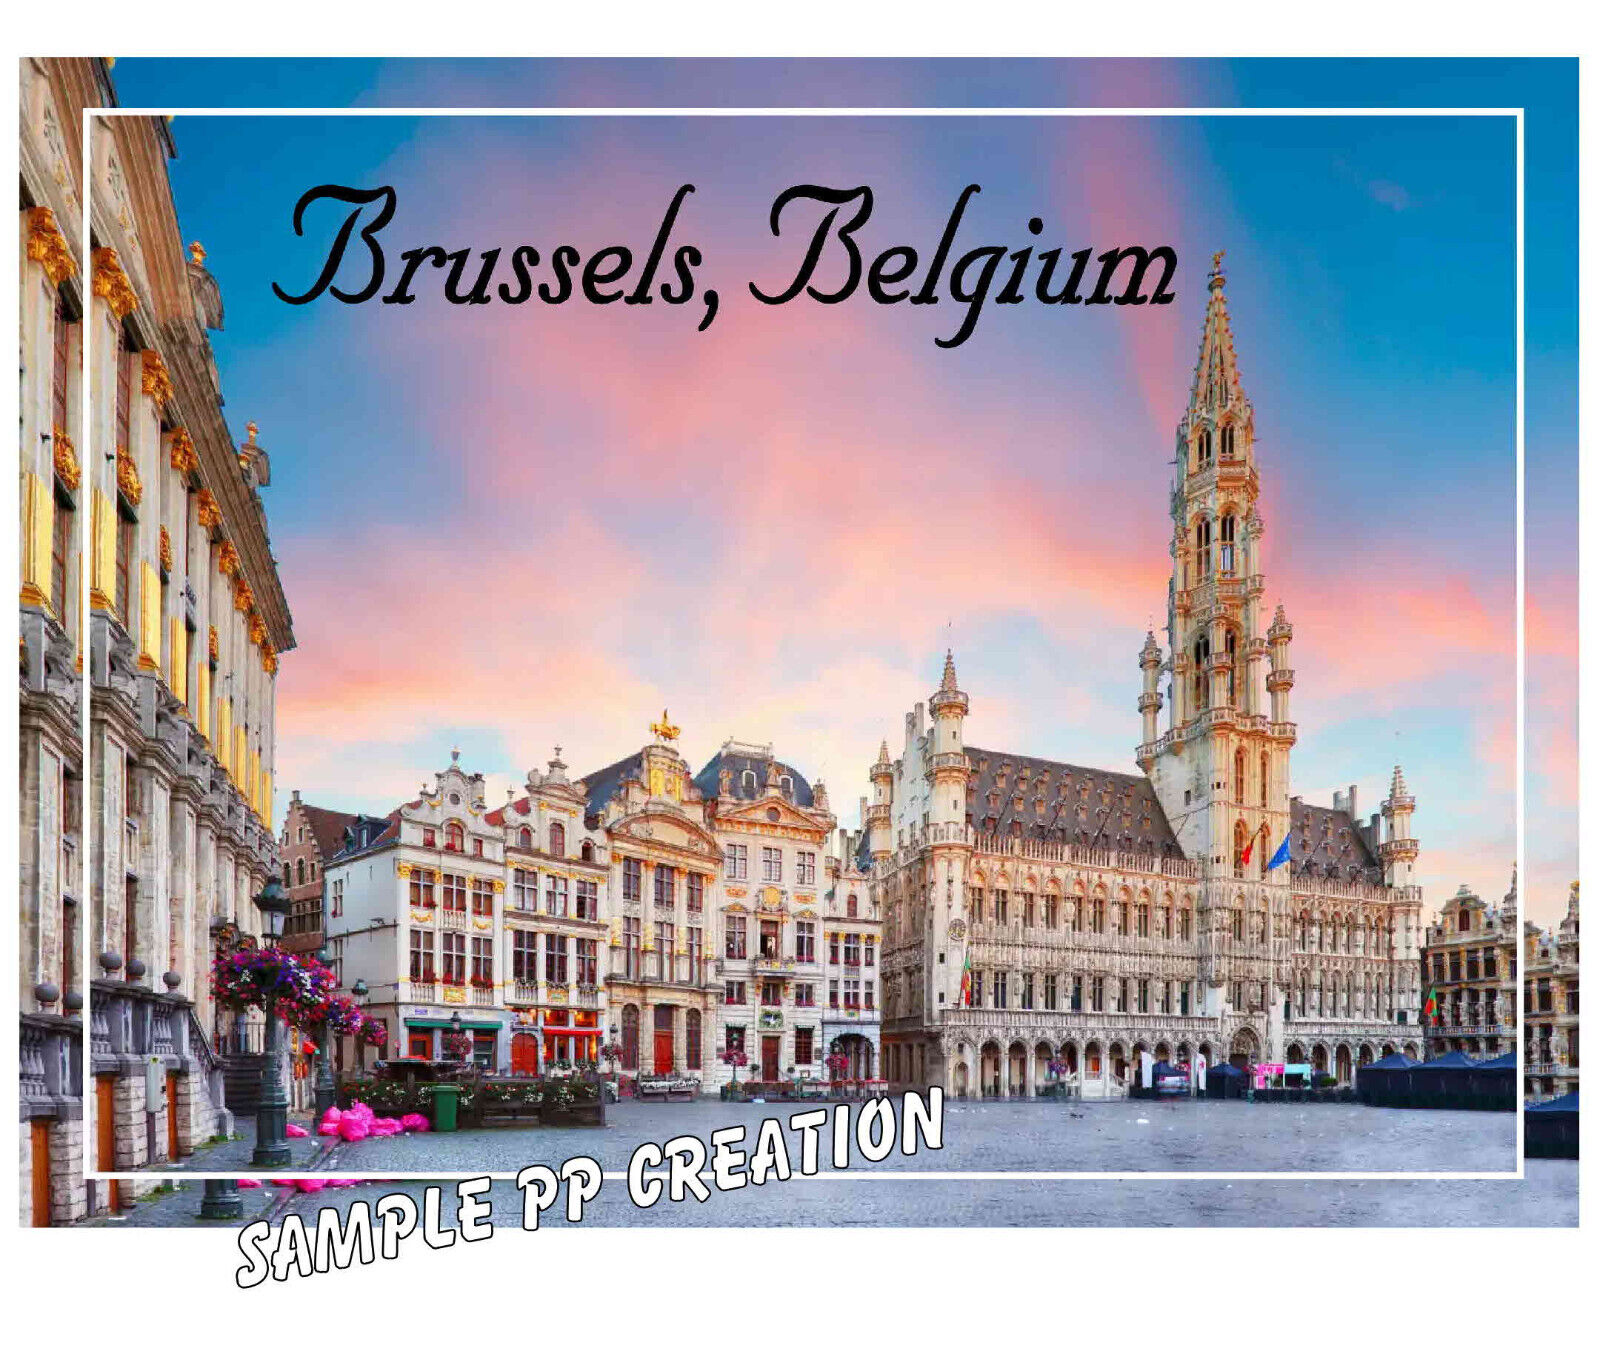 BRUSSELS, BELGIUM photo fridge MAGNET 4 X 3 inches TRAVEL